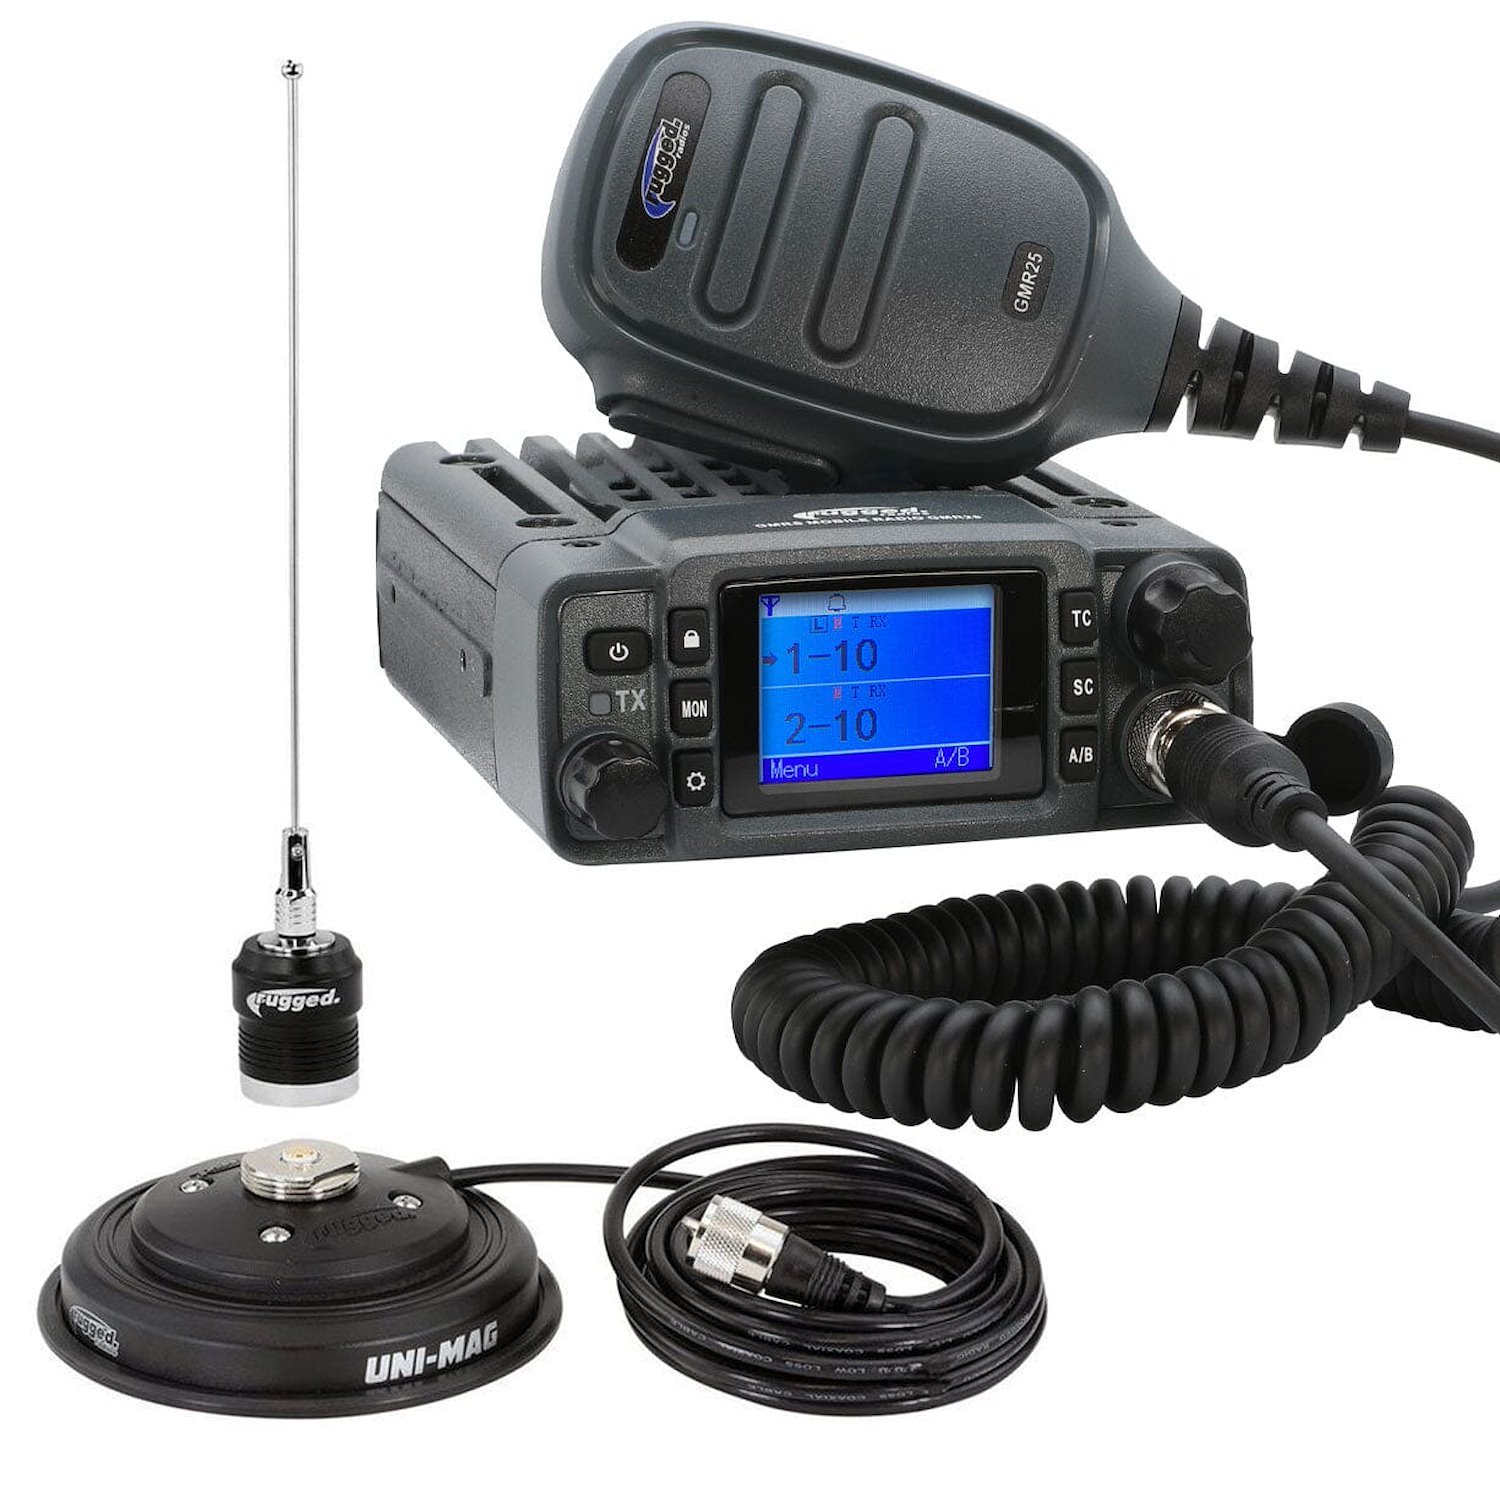 RK-GMR25 GMR25 Waterproof GMRS B& Mobile Radio Kit, w/ Antenna